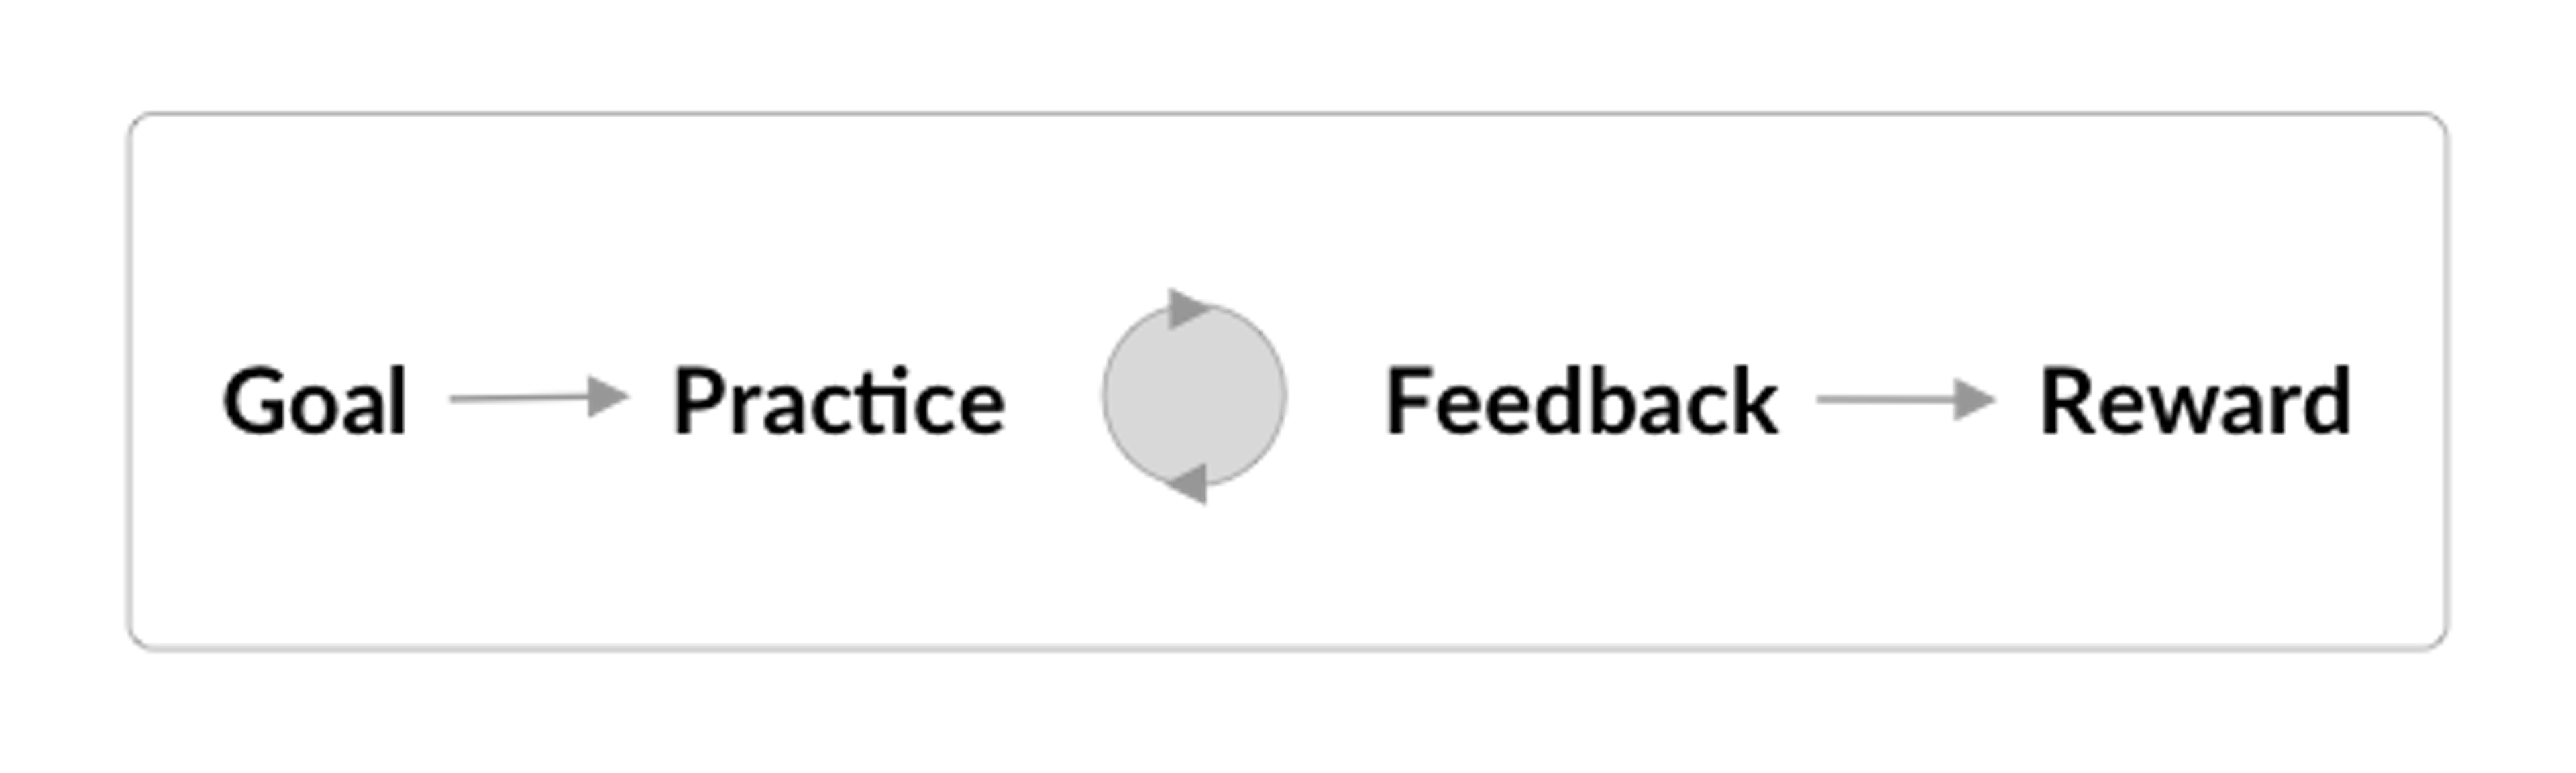 Practice and feedback loop